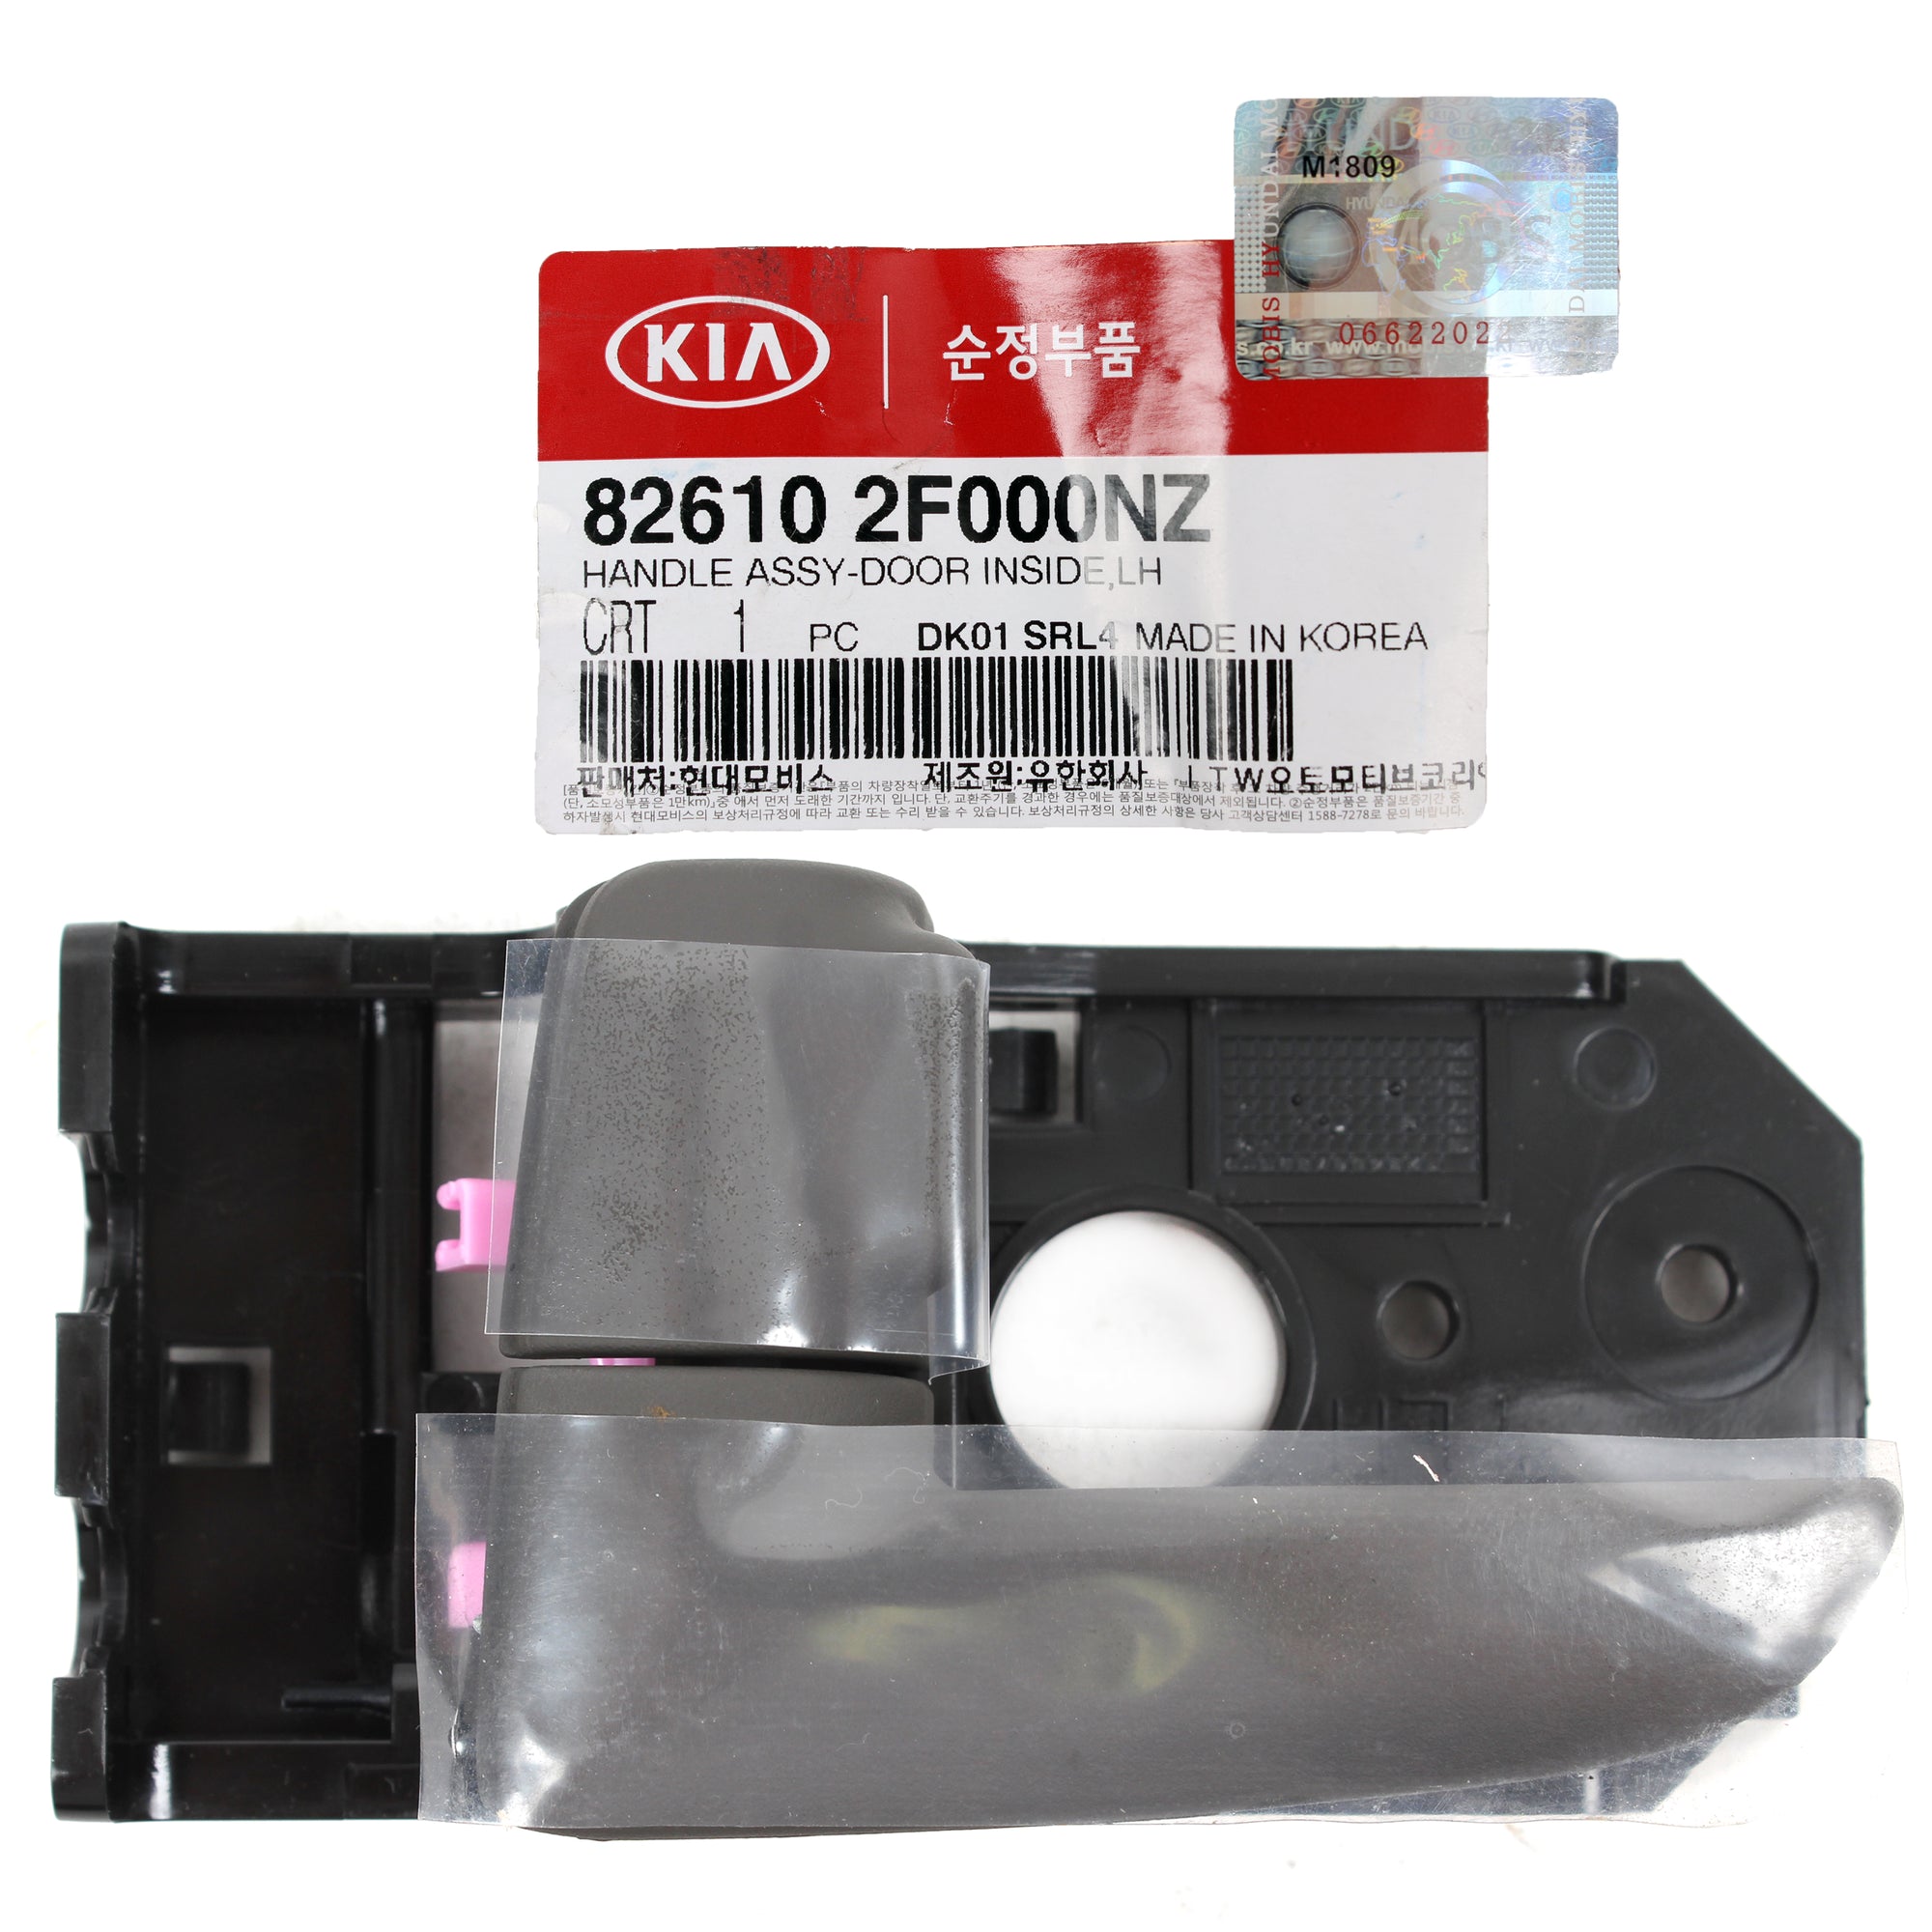 GENUINE Inside Door Handle LEFT DRIVER Side for 04-06 Kia Spectra 826102F000NZ